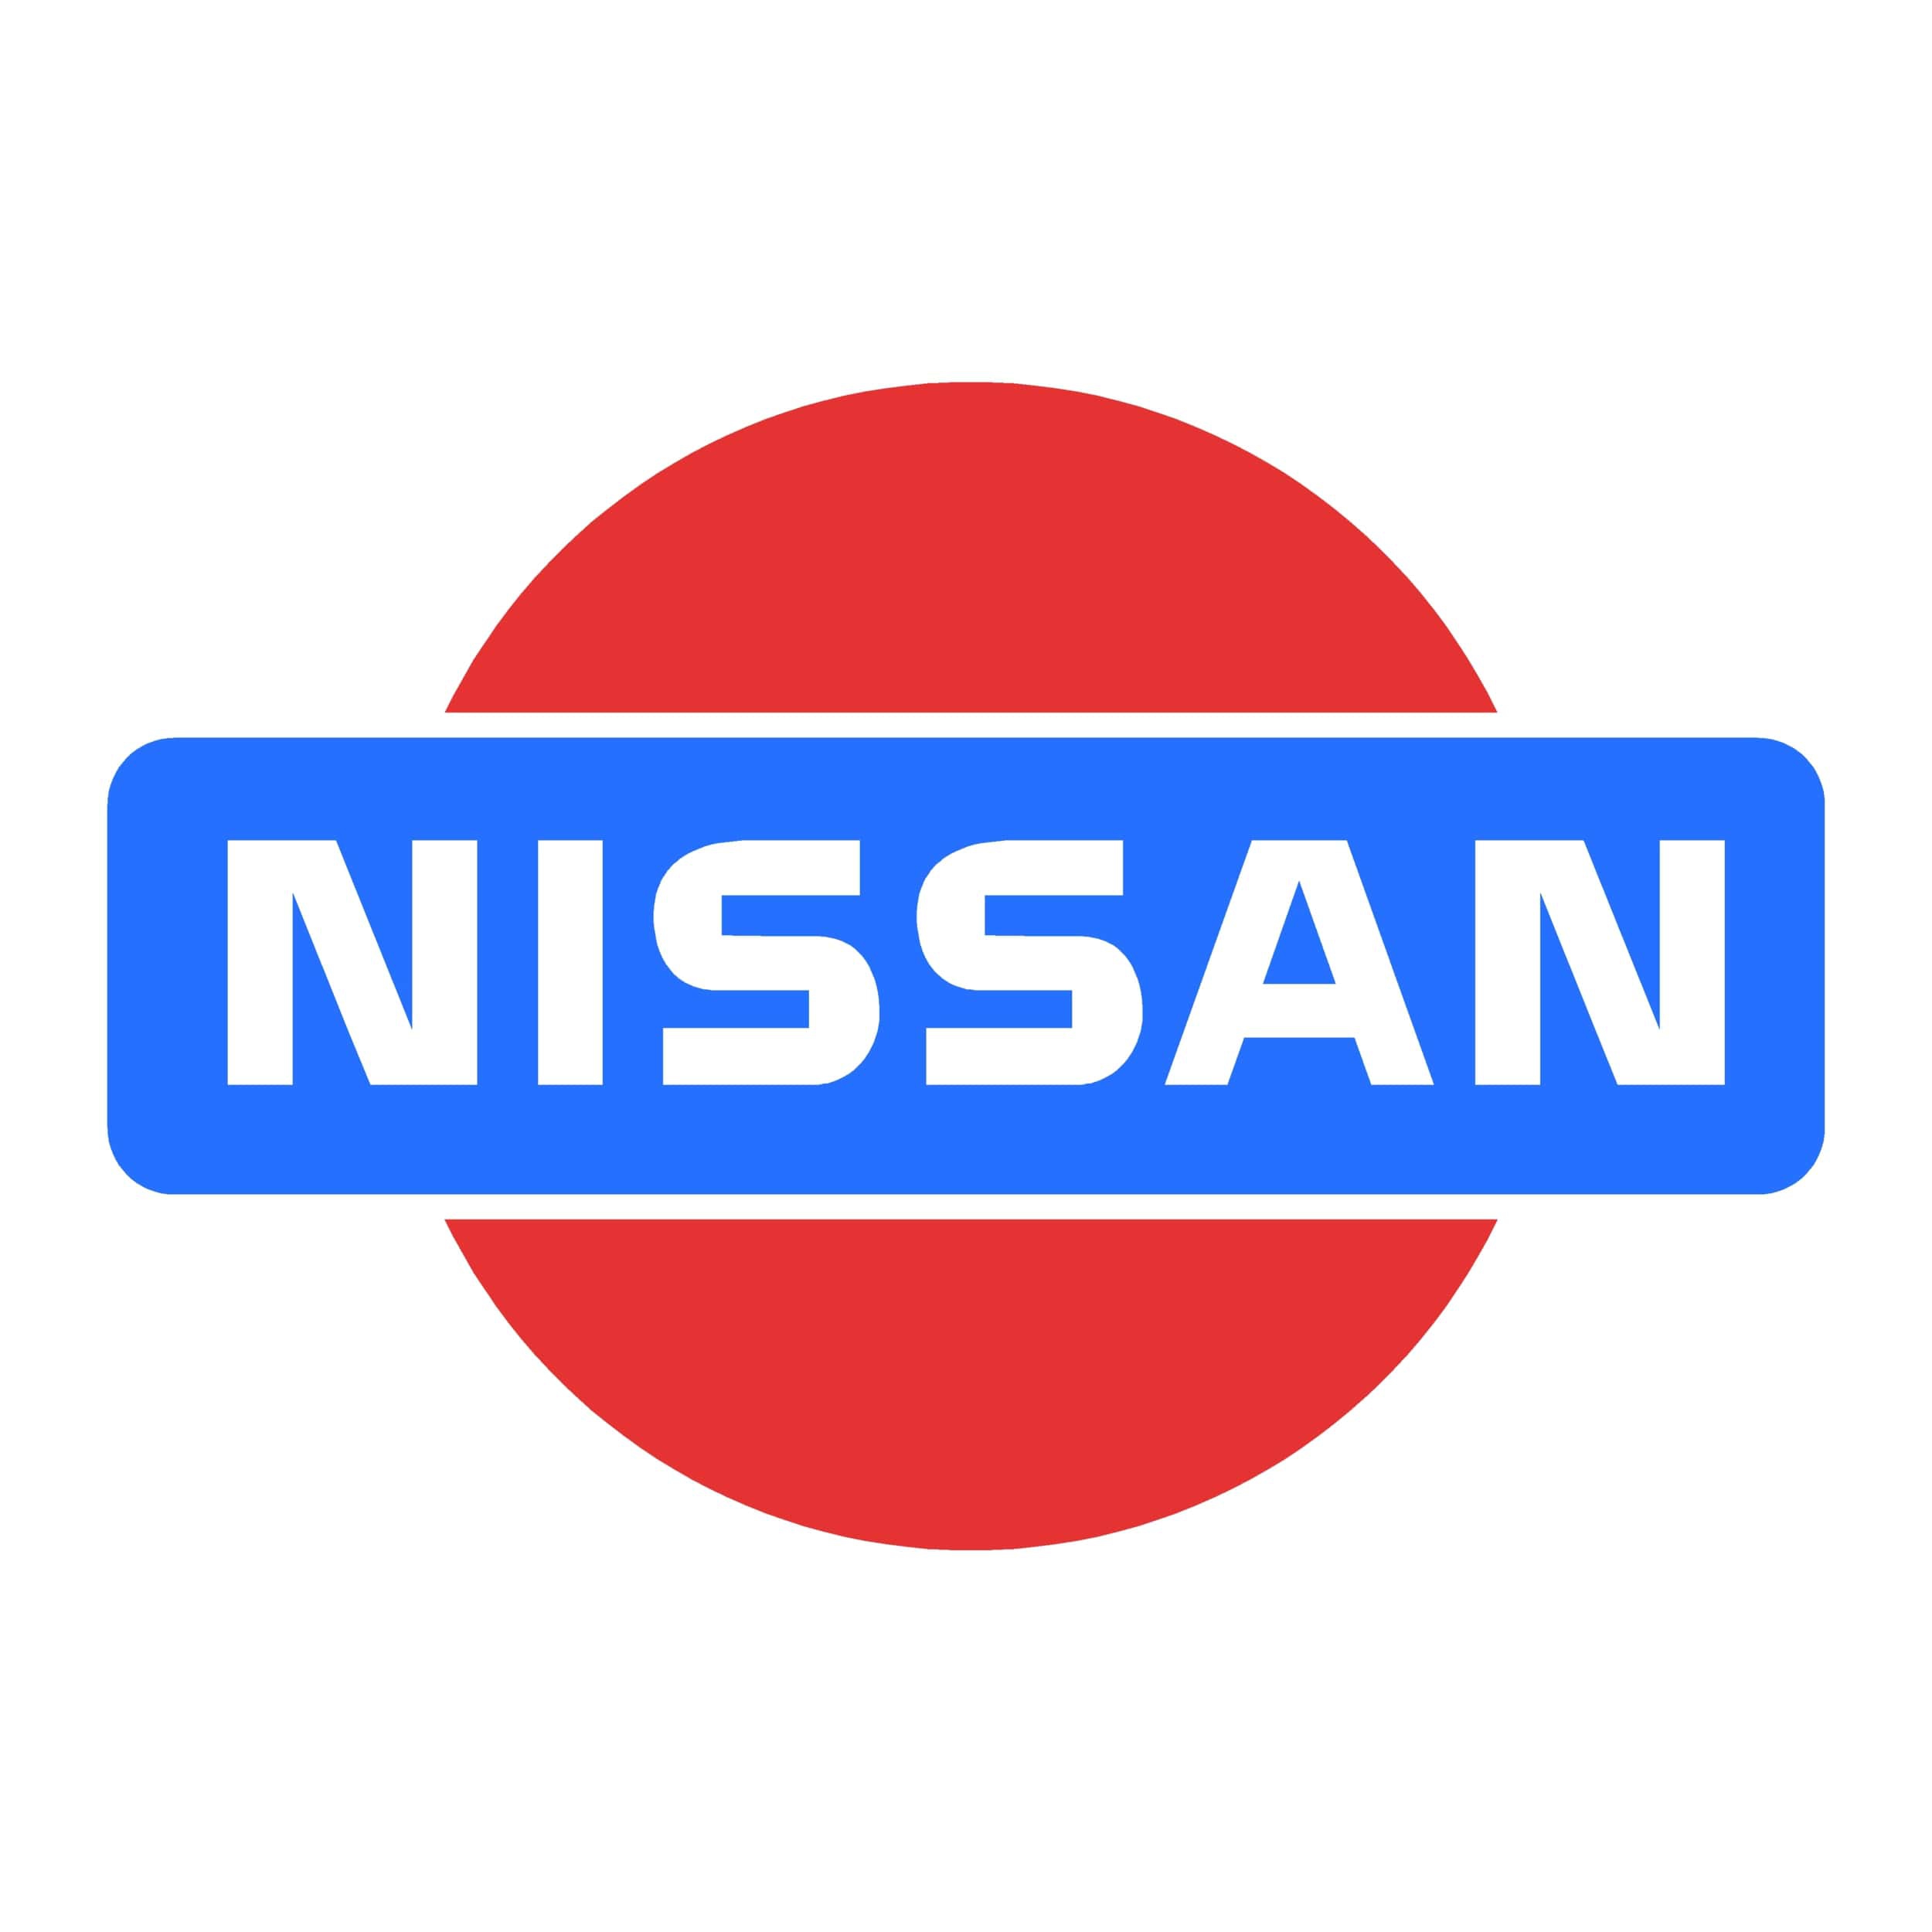 stickers-nissan-4x4-ref-3-dakar-land-rover-4x4-tout-terrain-rallye-competition-pneu-tuning-amortisseur-autocollant-fffsa-min